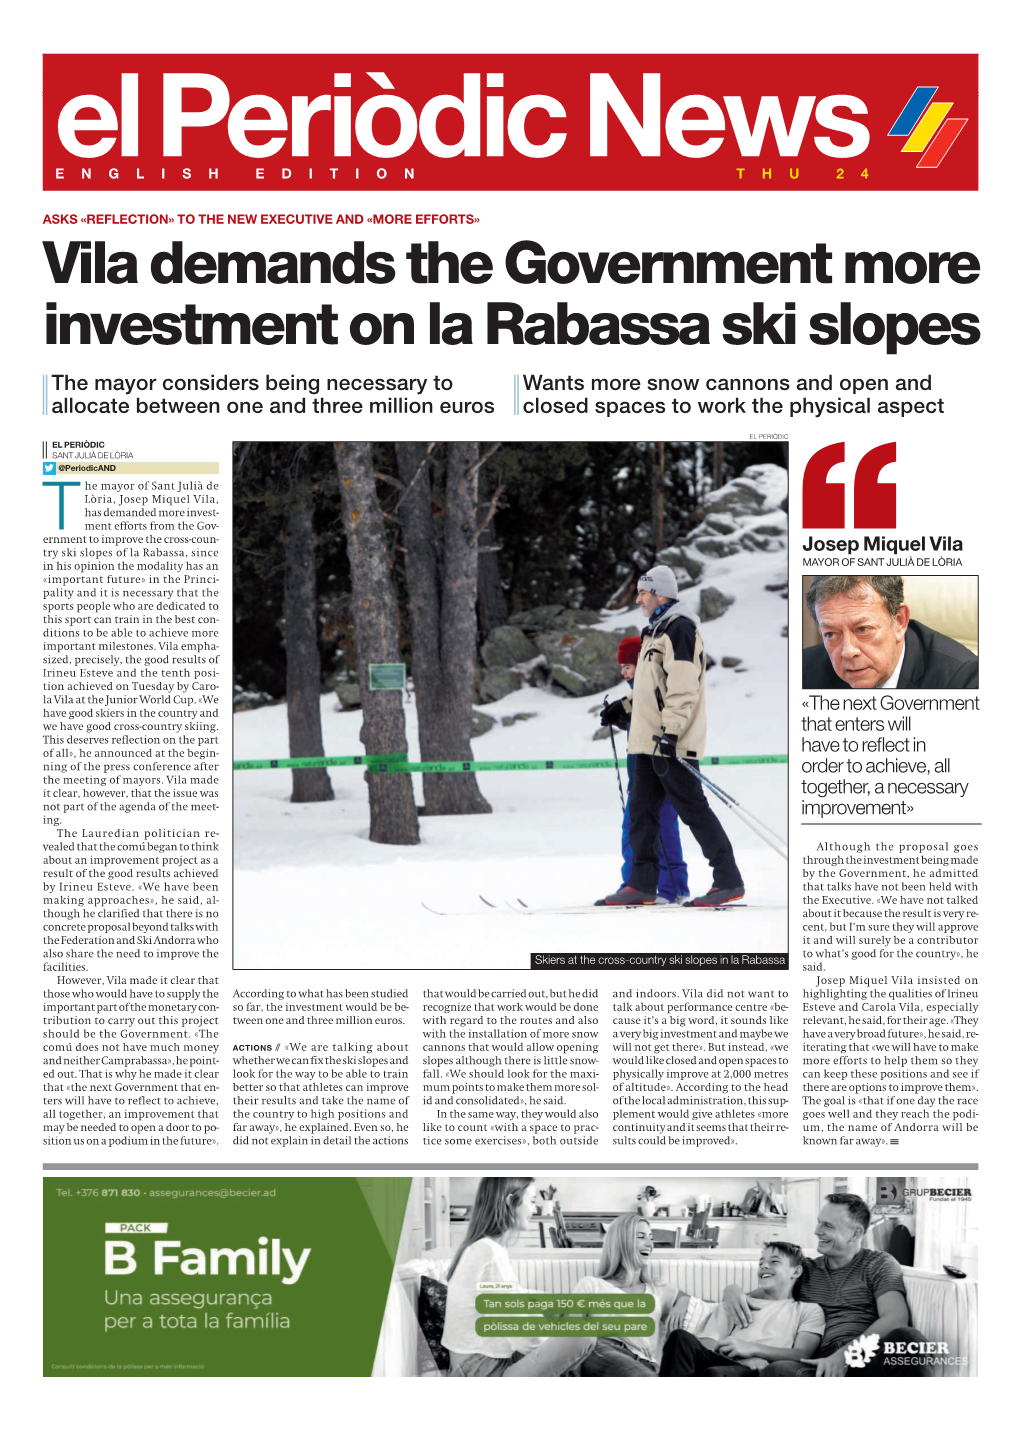 Vila Demands the Government More Investment on La Rabassa Ski Slopes